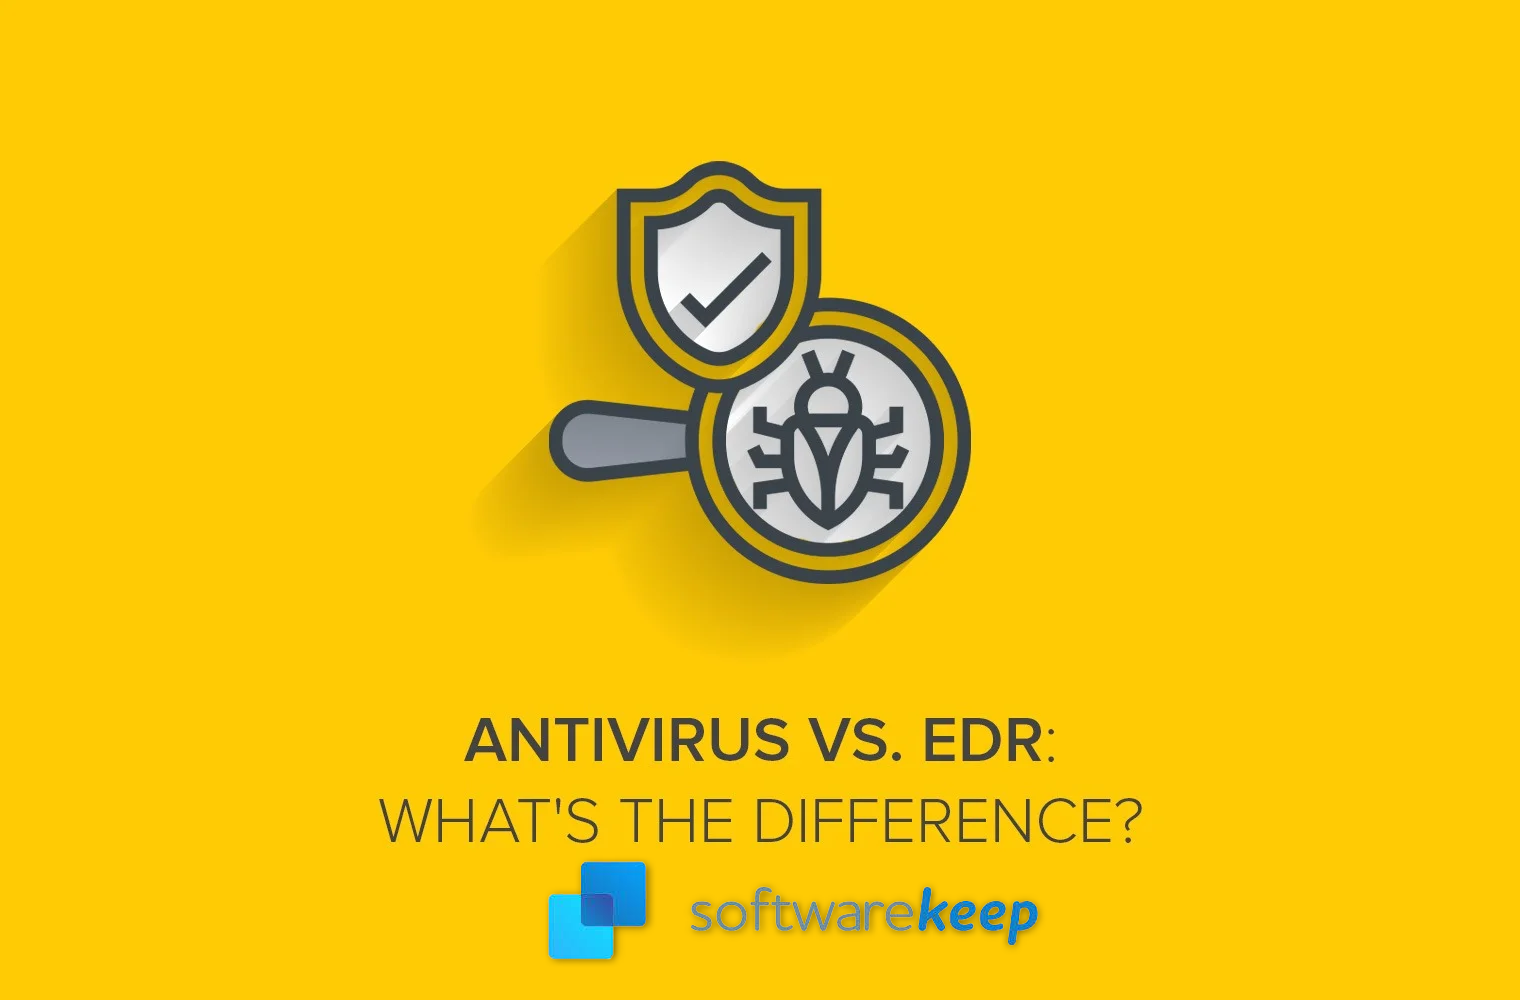 Traditional Antivirus vs. EDR: EDR Antivirus Difference